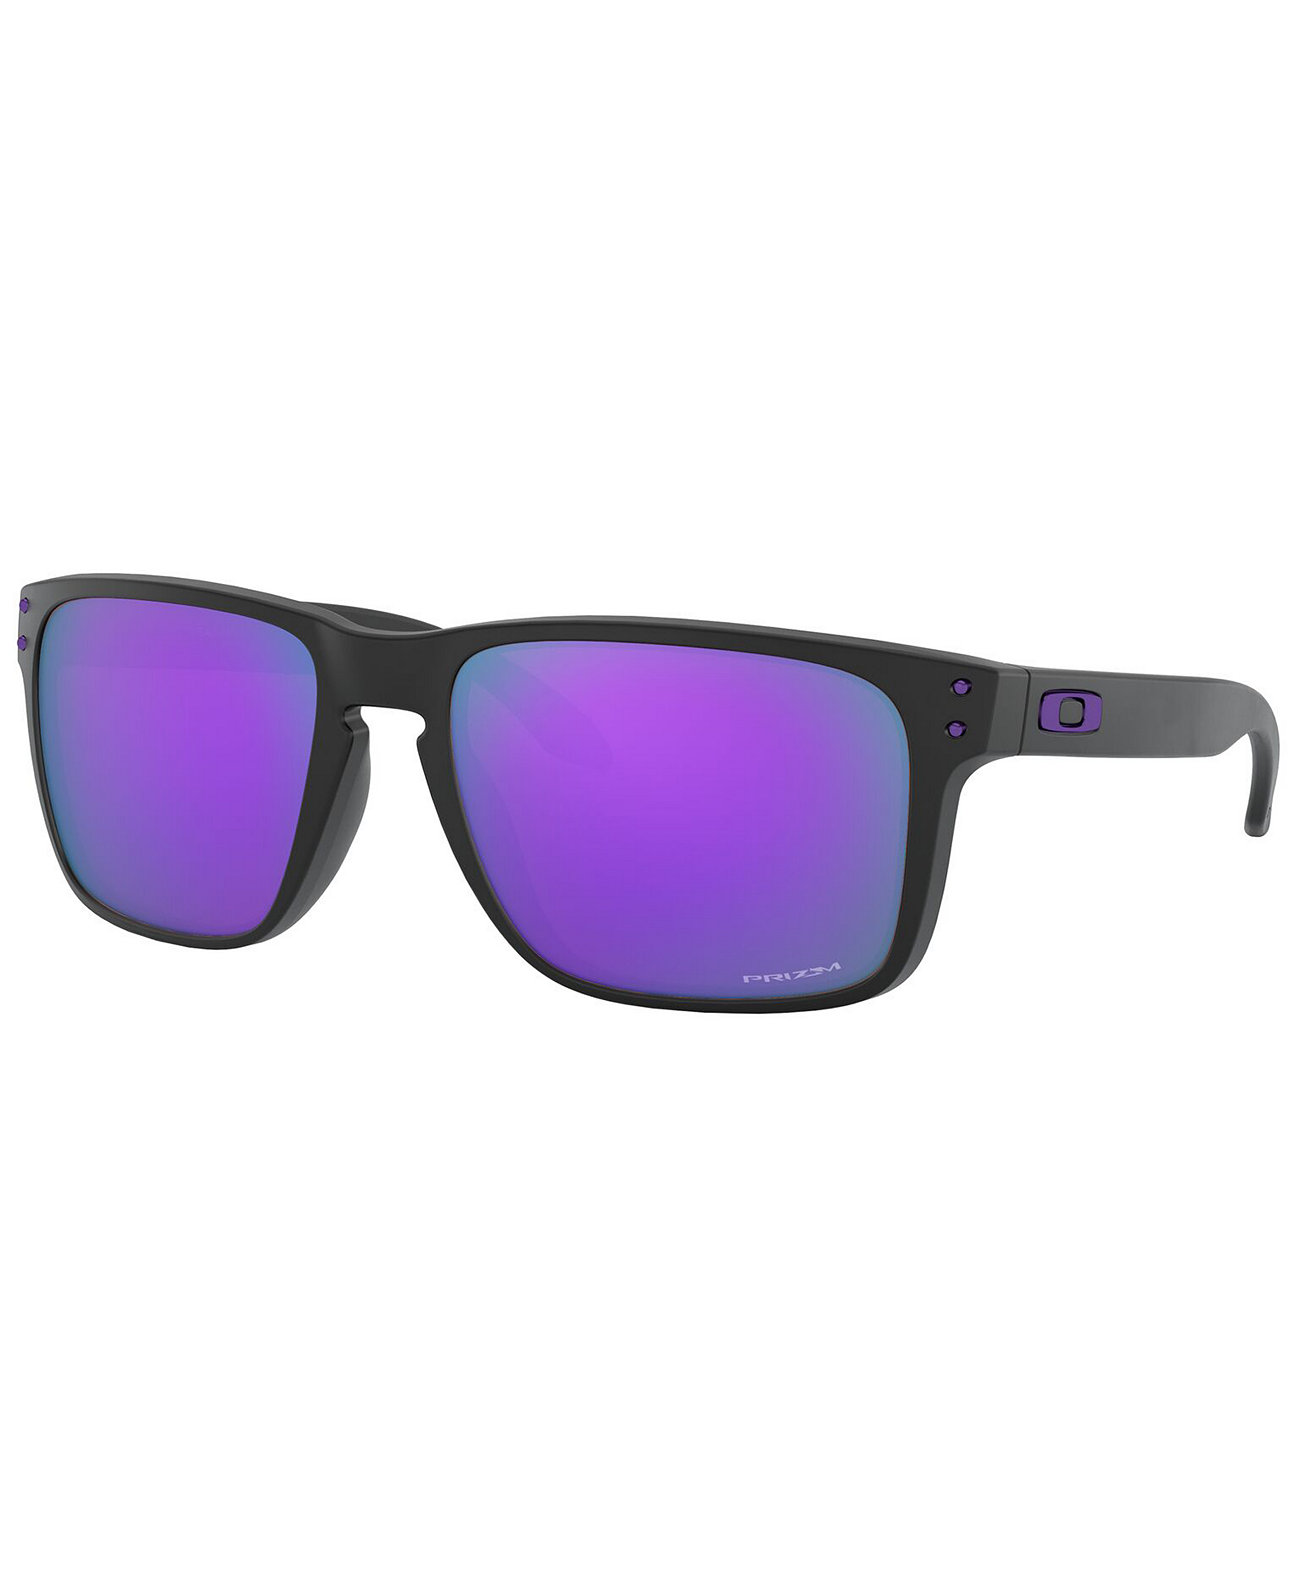 Солнцезащитные очки HOLBROOK XL, OO9417 59 Oakley